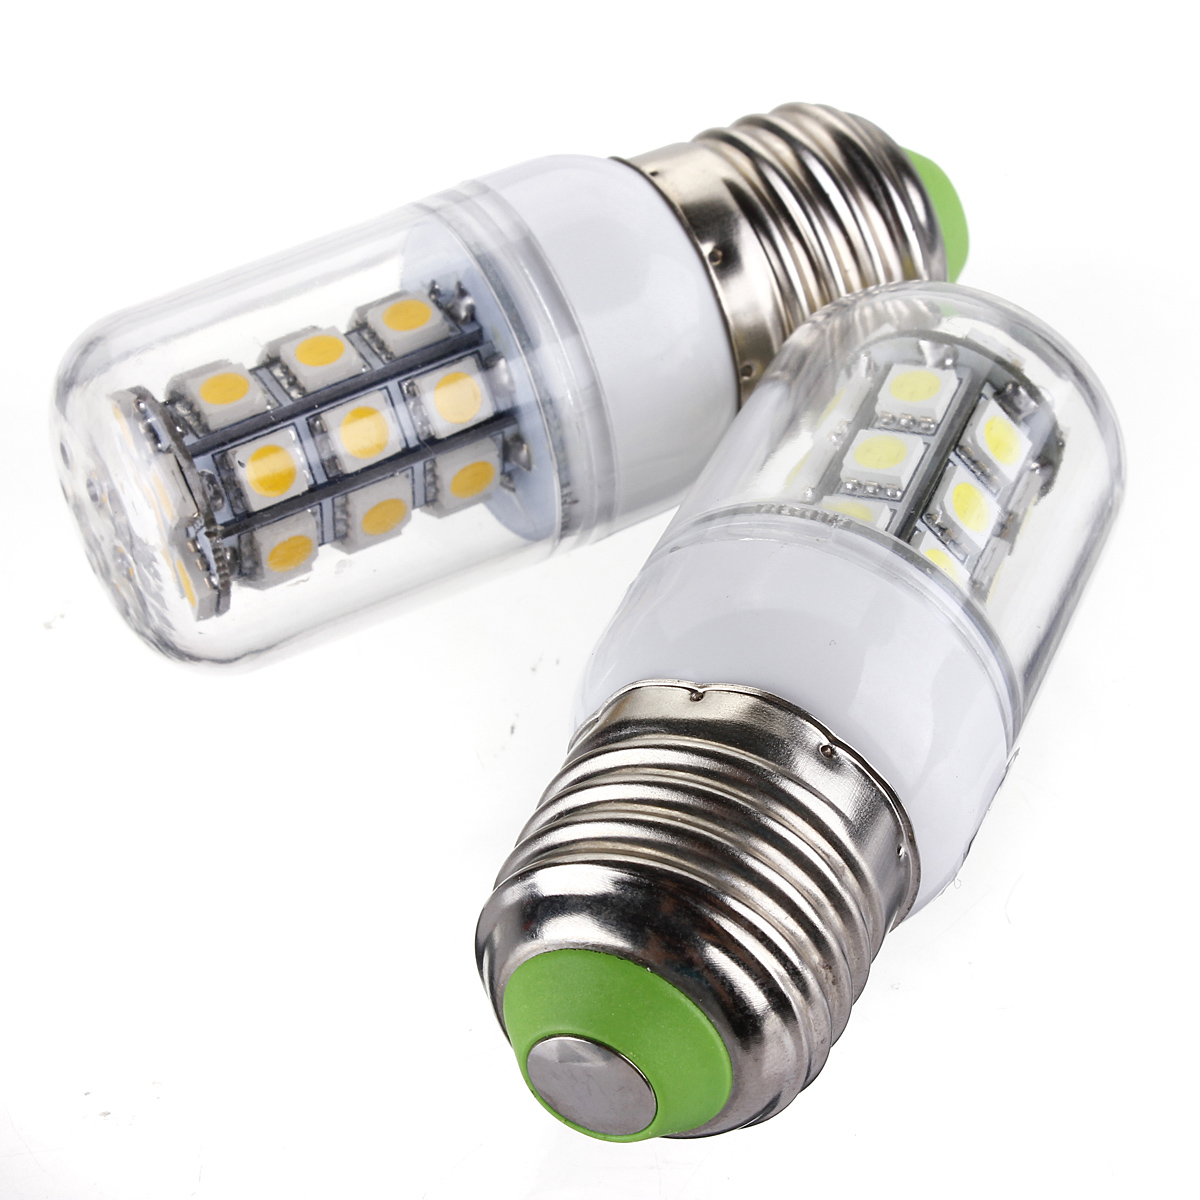 

E27 LED Bulbs 12V 3W 27 SMD 5050 White/Warm White Corn Light